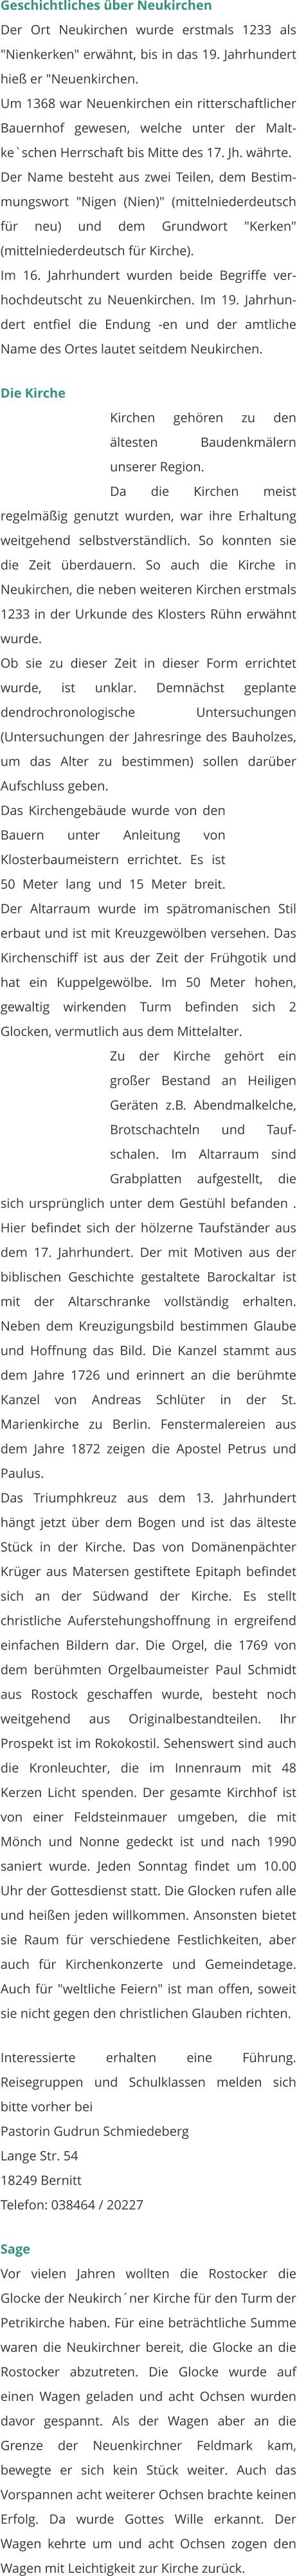 Geschichtliches über Neukirchen Der Ort Neukirchen wurde erstmals 1233 als "Nienkerken" erwähnt, bis in das 19. Jahrhundert hieß er "Neuenkirchen. Um 1368 war Neuenkirchen ein ritterschaftlicher Bauernhof gewesen, welche unter der Malt-ke`schen Herrschaft bis Mitte des 17. Jh. währte. Der Name besteht aus zwei Teilen, dem Bestim-mungswort "Nigen (Nien)" (mittelniederdeutsch für neu) und dem Grundwort "Kerken" (mittelniederdeutsch für Kirche). Im 16. Jahrhundert wurden beide Begriffe ver-hochdeutscht zu Neuenkirchen. Im 19. Jahrhun-dert entfiel die Endung -en und der amtliche Name des Ortes lautet seitdem Neukirchen.  Die Kirche Kirchen gehören zu den ältesten Baudenkmälern unserer Region. Da die Kirchen meist regelmäßig genutzt wurden, war ihre Erhaltung weitgehend selbstverständlich. So konnten sie die Zeit überdauern. So auch die Kirche in Neukirchen, die neben weiteren Kirchen erstmals 1233 in der Urkunde des Klosters Rühn erwähnt wurde. Ob sie zu dieser Zeit in dieser Form errichtet wurde, ist unklar. Demnächst geplante dendrochronologische Untersuchungen (Untersuchungen der Jahresringe des Bauholzes, um das Alter zu bestimmen) sollen darüber Aufschluss geben.  Das Kirchengebäude wurde von den Bauern unter Anleitung von Klosterbaumeistern errichtet. Es ist 50 Meter lang und 15 Meter breit. Der Altarraum wurde im spätromanischen Stil erbaut und ist mit Kreuzgewölben versehen. Das Kirchenschiff ist aus der Zeit der Frühgotik und hat ein Kuppelgewölbe. Im 50 Meter hohen, gewaltig wirkenden Turm befinden sich 2 Glocken, vermutlich aus dem Mittelalter.  Zu der Kirche gehört ein großer Bestand an Heiligen Geräten z.B. Abendmalkelche, Brotschachteln und Tauf-schalen. Im Altarraum sind Grabplatten aufgestellt, die sich ursprünglich unter dem Gestühl befanden . Hier befindet sich der hölzerne Taufständer aus dem 17. Jahrhundert. Der mit Motiven aus der biblischen Geschichte gestaltete Barockaltar ist mit der Altarschranke vollständig erhalten. Neben dem Kreuzigungsbild bestimmen Glaube und Hoffnung das Bild. Die Kanzel stammt aus dem Jahre 1726 und erinnert an die berühmte Kanzel von Andreas Schlüter in der St. Marienkirche zu Berlin. Fenstermalereien aus dem Jahre 1872 zeigen die Apostel Petrus und Paulus.  Das Triumphkreuz aus dem 13. Jahrhundert hängt jetzt über dem Bogen und ist das älteste Stück in der Kirche. Das von Domänenpächter Krüger aus Matersen gestiftete Epitaph befindet sich an der Südwand der Kirche. Es stellt christliche Auferstehungshoffnung in ergreifend einfachen Bildern dar. Die Orgel, die 1769 von dem berühmten Orgelbaumeister Paul Schmidt aus Rostock geschaffen wurde, besteht noch weitgehend aus Originalbestandteilen. Ihr Prospekt ist im Rokokostil. Sehenswert sind auch die Kronleuchter, die im Innenraum mit 48 Kerzen Licht spenden. Der gesamte Kirchhof ist von einer Feldsteinmauer umgeben, die mit Mönch und Nonne gedeckt ist und nach 1990 saniert wurde. Jeden Sonntag findet um 10.00 Uhr der Gottesdienst statt. Die Glocken rufen alle und heißen jeden willkommen. Ansonsten bietet sie Raum für verschiedene Festlichkeiten, aber auch für Kirchenkonzerte und Gemeindetage. Auch für "weltliche Feiern" ist man offen, soweit sie nicht gegen den christlichen Glauben richten.  Interessierte erhalten eine Führung. Reisegruppen und Schulklassen melden sich bitte vorher bei Pastorin Gudrun Schmiedeberg Lange Str. 54 18249 Bernitt Telefon: 038464 / 20227  Sage Vor vielen Jahren wollten die Rostocker die Glocke der Neukirch´ner Kirche für den Turm der Petrikirche haben. Für eine beträchtliche Summe waren die Neukirchner bereit, die Glocke an die Rostocker abzutreten. Die Glocke wurde auf einen Wagen geladen und acht Ochsen wurden davor gespannt. Als der Wagen aber an die Grenze der Neuenkirchner Feldmark kam, bewegte er sich kein Stück weiter. Auch das Vorspannen acht weiterer Ochsen brachte keinen Erfolg. Da wurde Gottes Wille erkannt. Der Wagen kehrte um und acht Ochsen zogen den Wagen mit Leichtigkeit zur Kirche zurück.